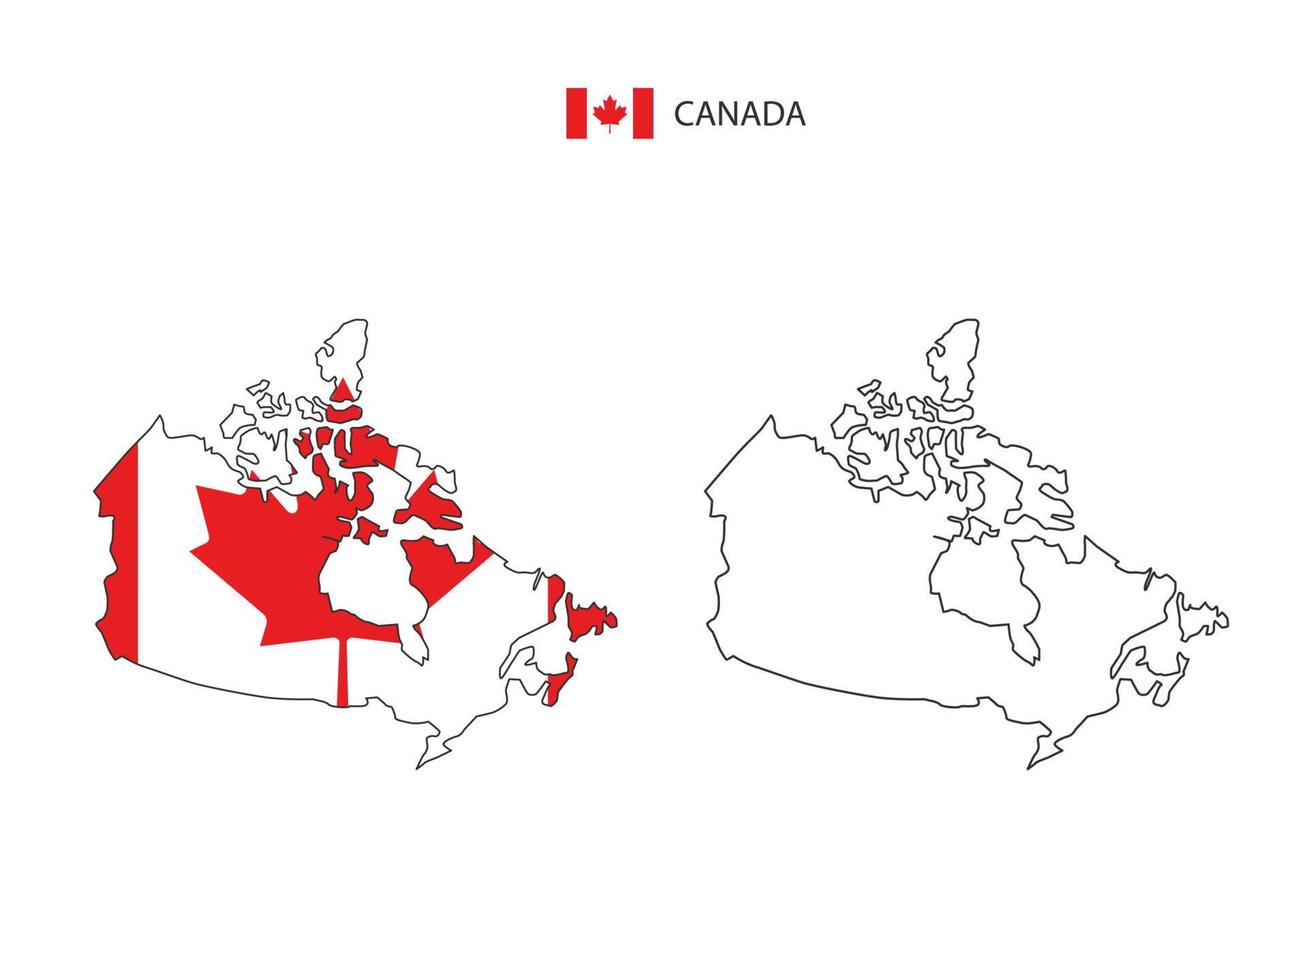 vector de ciudad de mapa de canadá dividido por estilo de simplicidad de contorno. tiene 2 versiones, versión de línea delgada negra y versión de color de bandera de país. ambos mapas estaban en el fondo blanco.